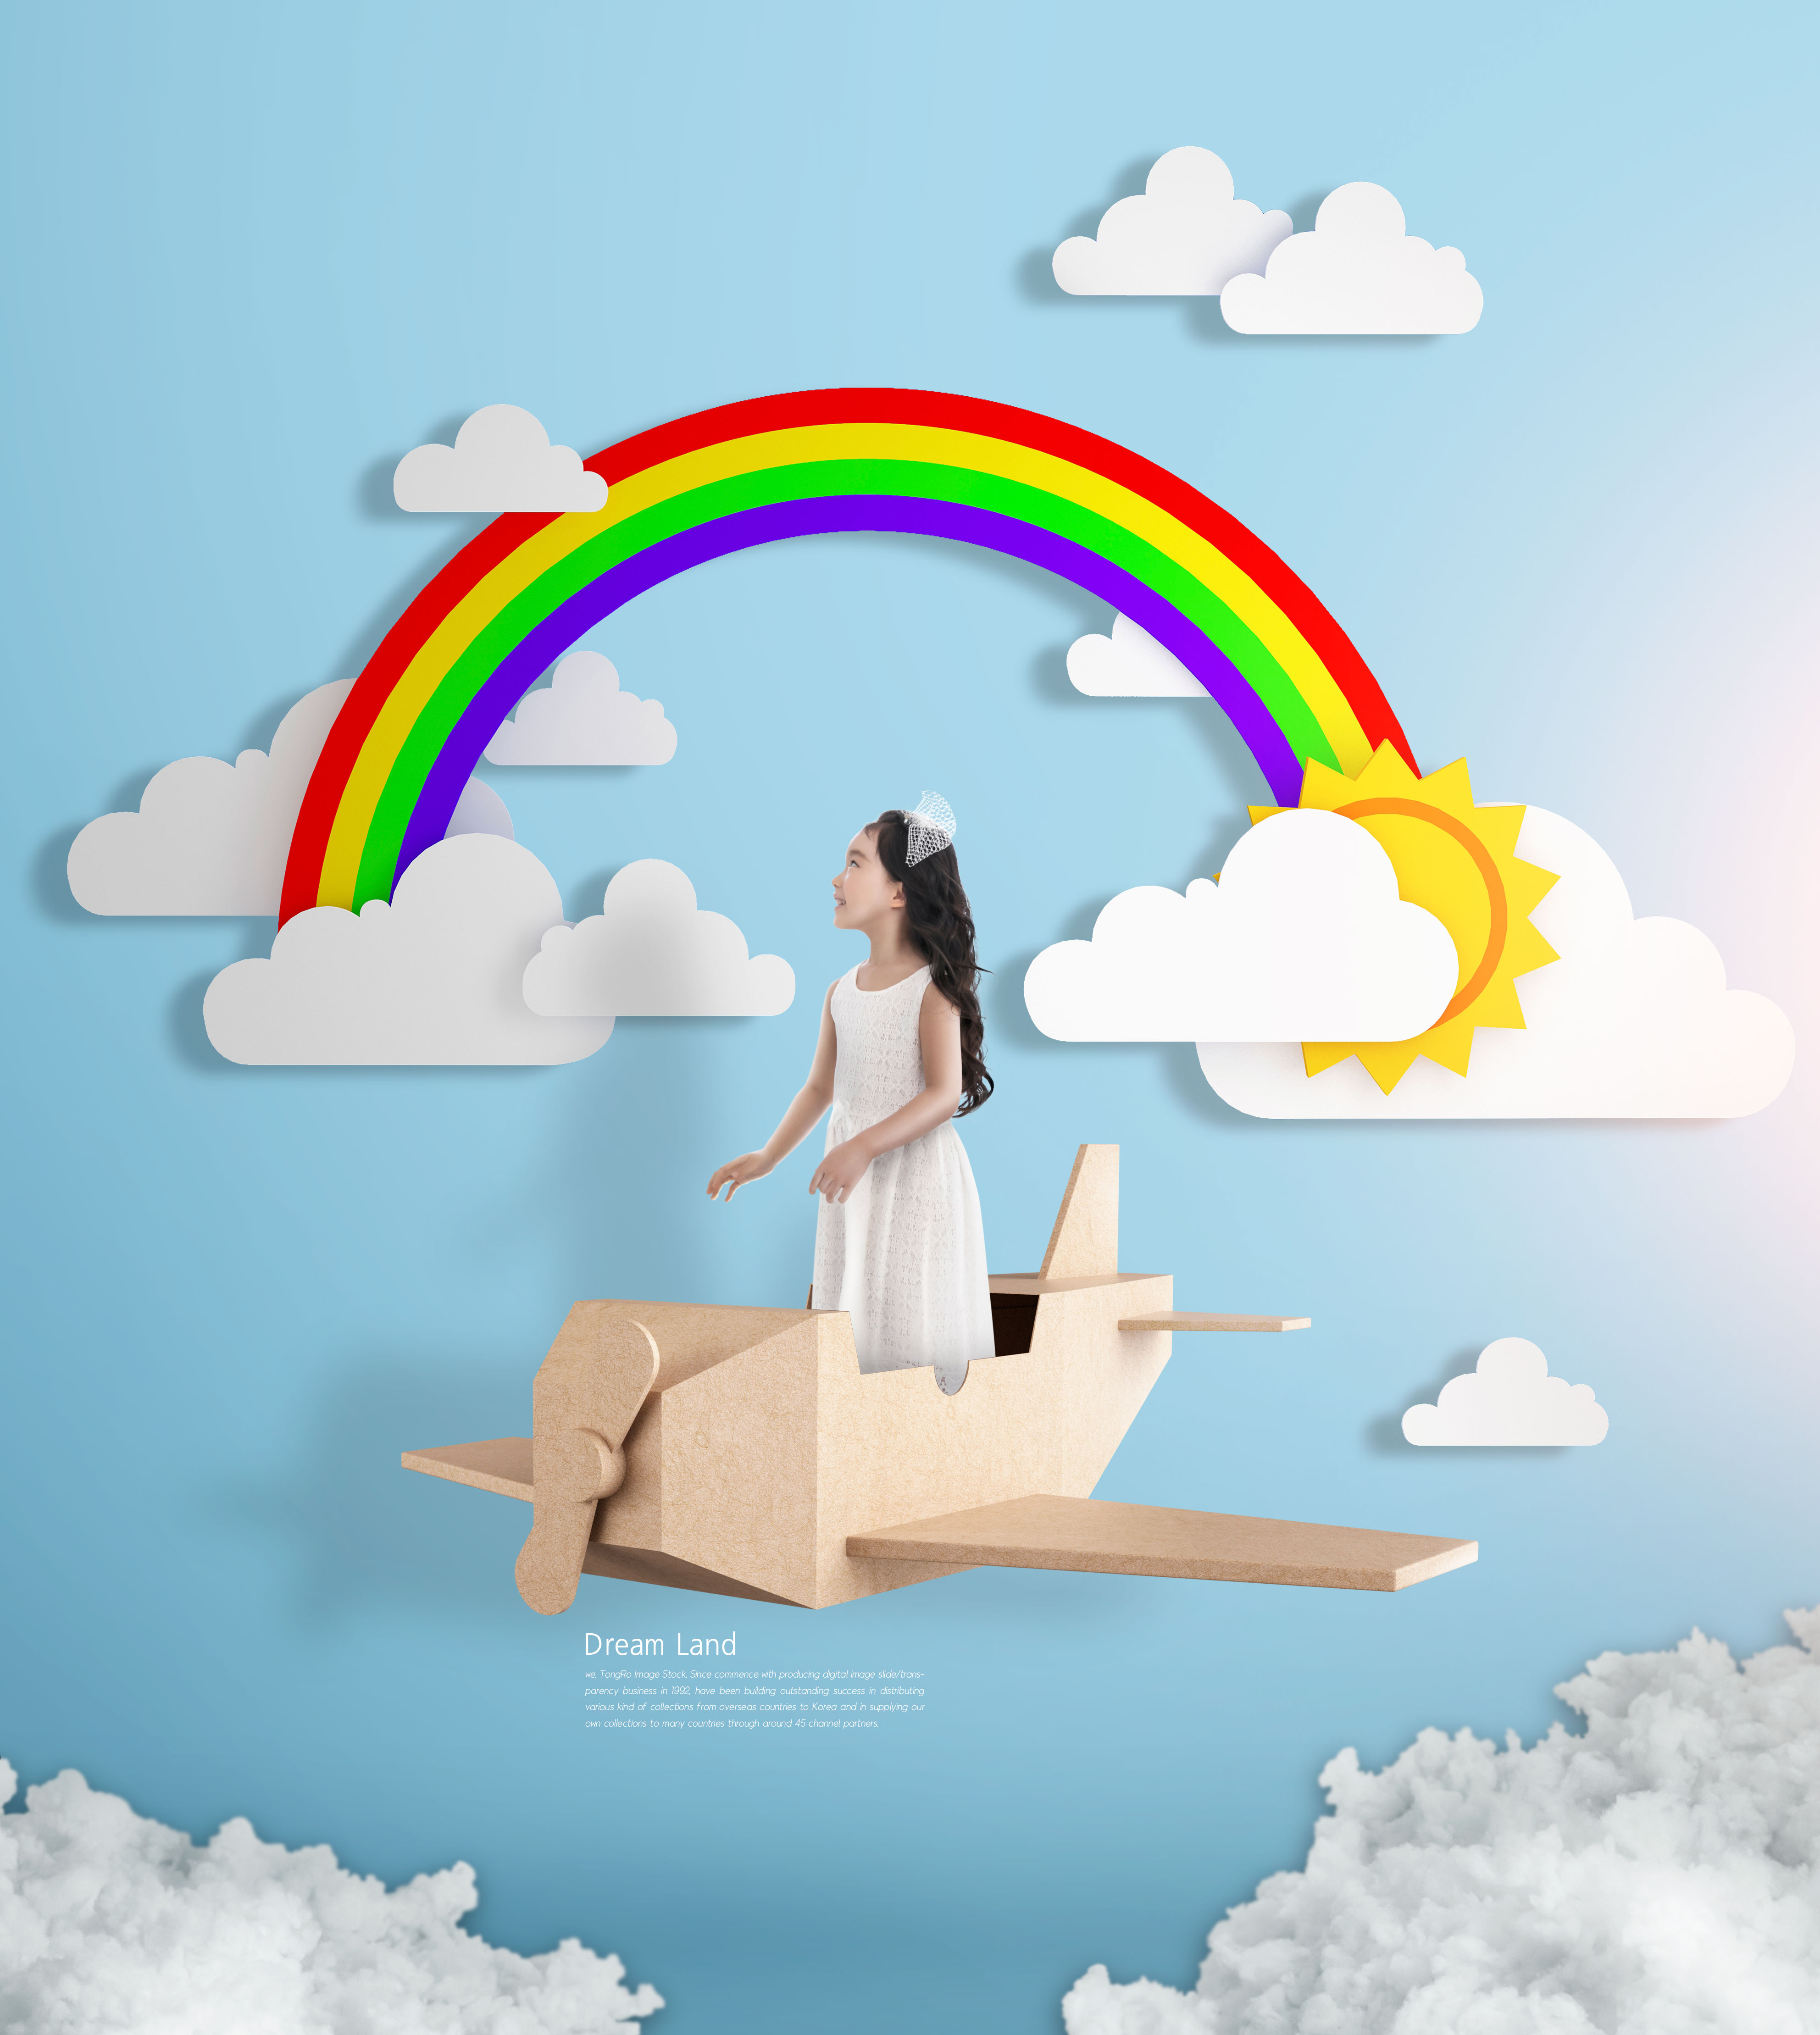 创意彩虹梦境卡通活动海报设计素材插图